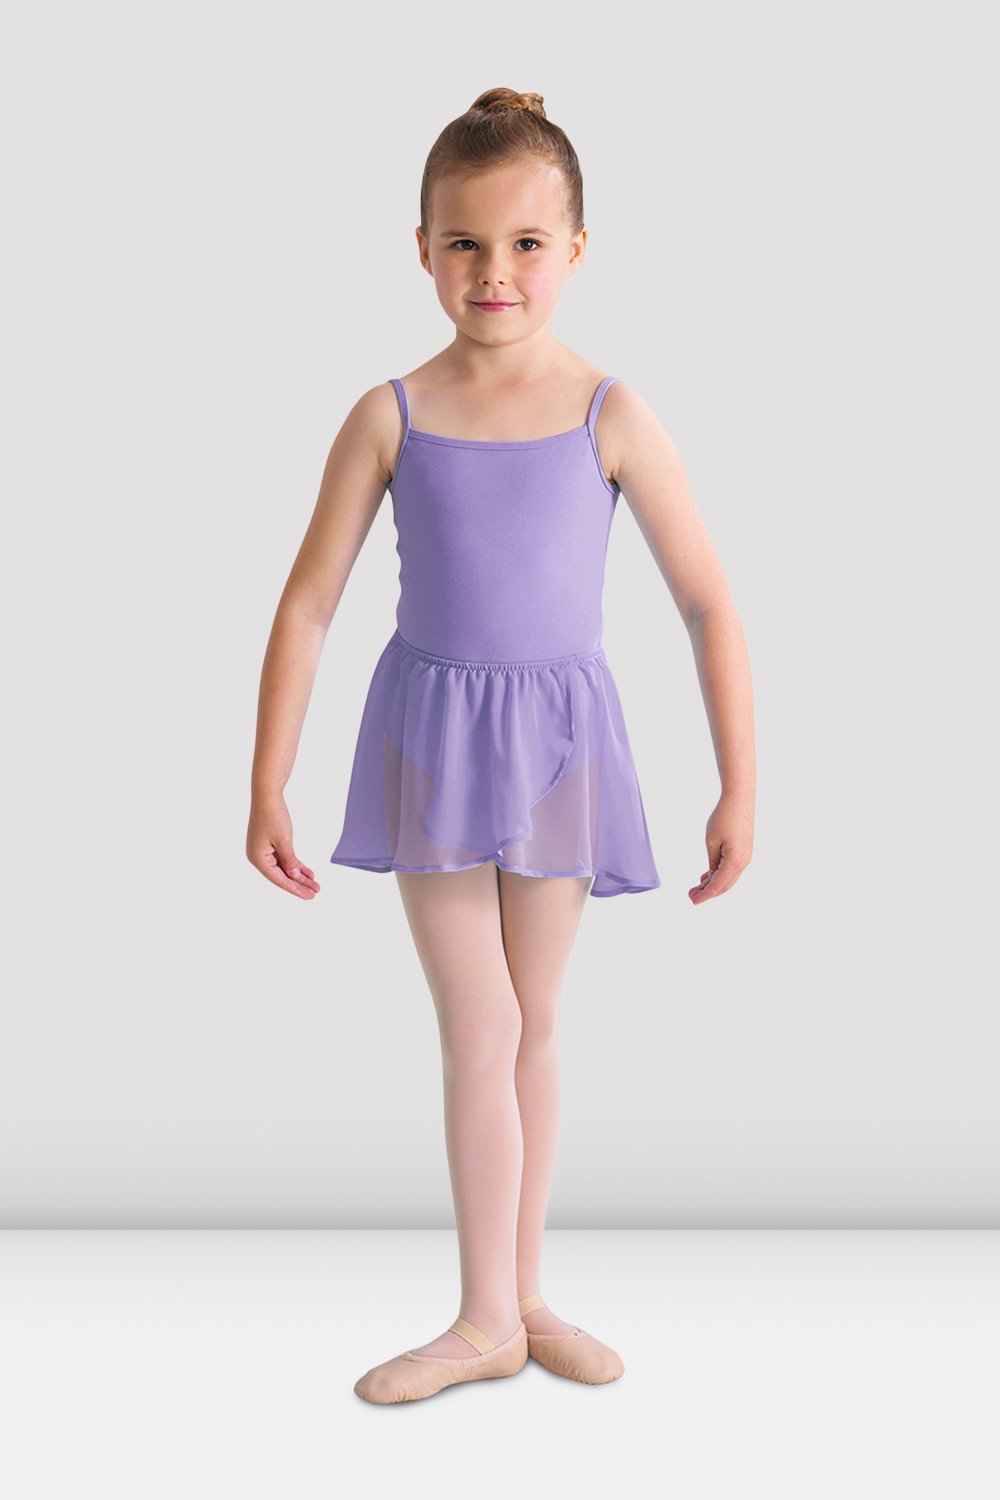 Falda ballet niña celeste - Danza y Más